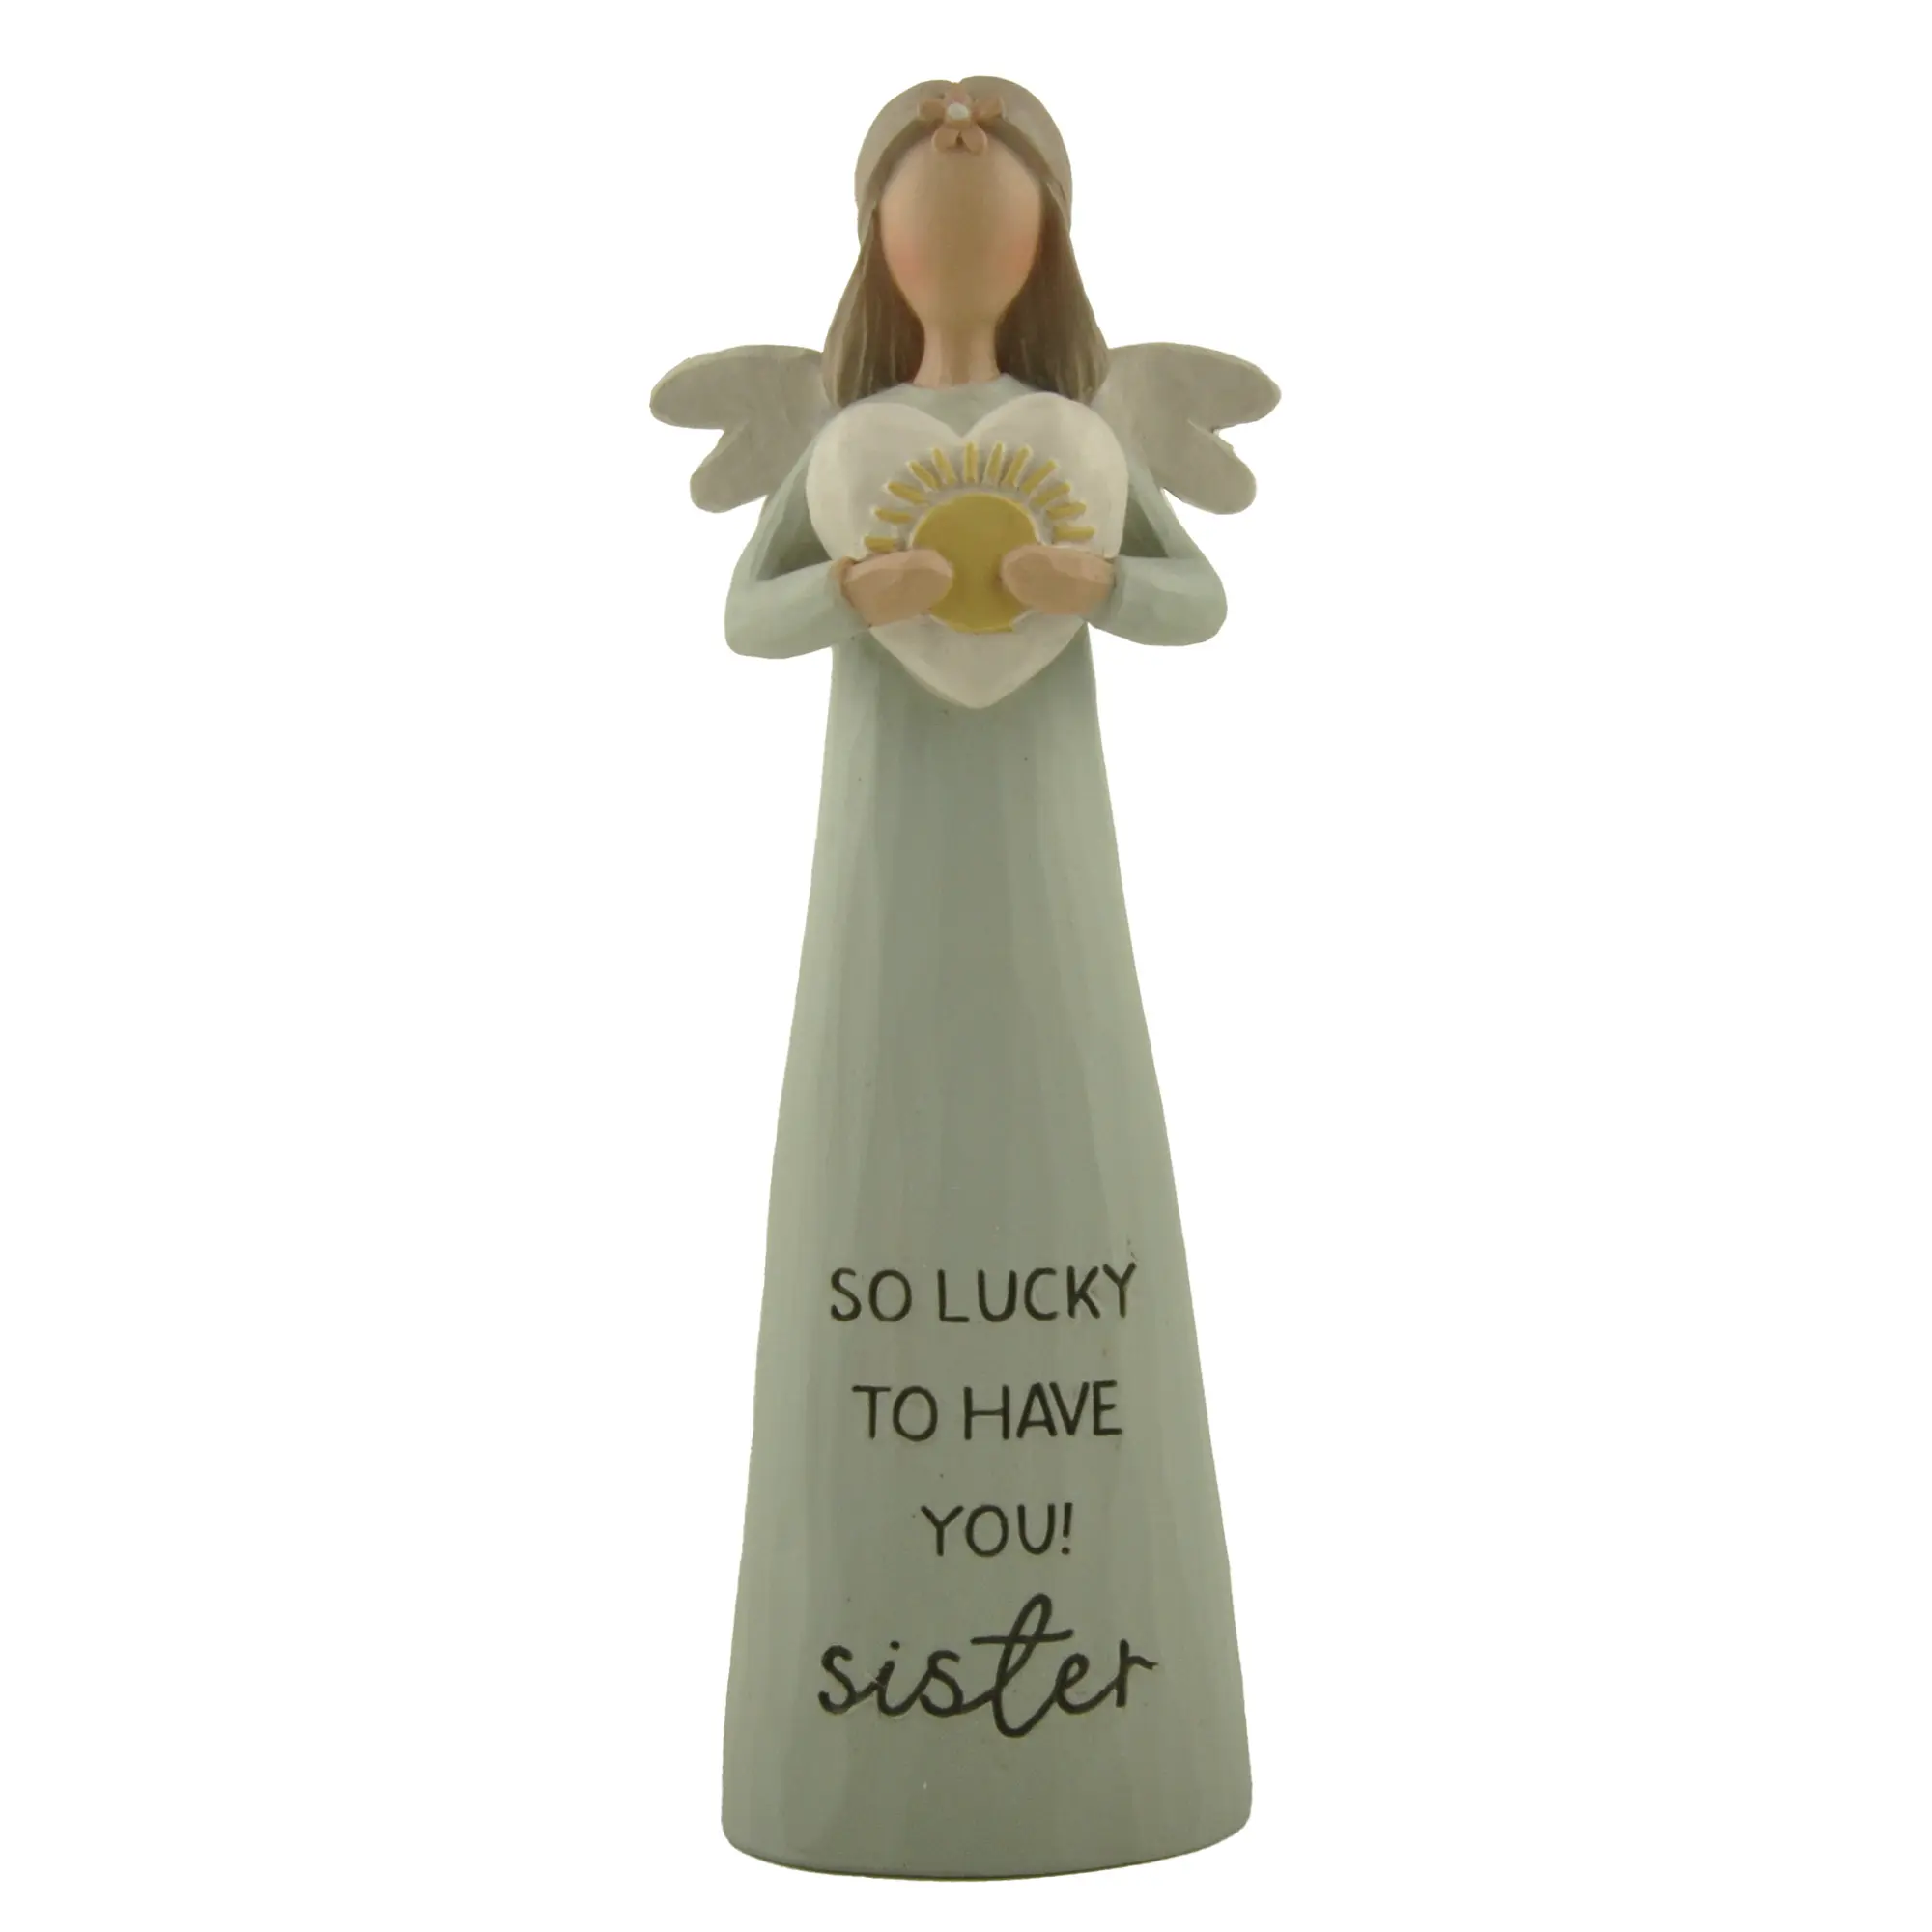 Nouveautés Résine Ange Artisanat Bright Blessings Angel -Sister Figurine w Heart for Home Decor